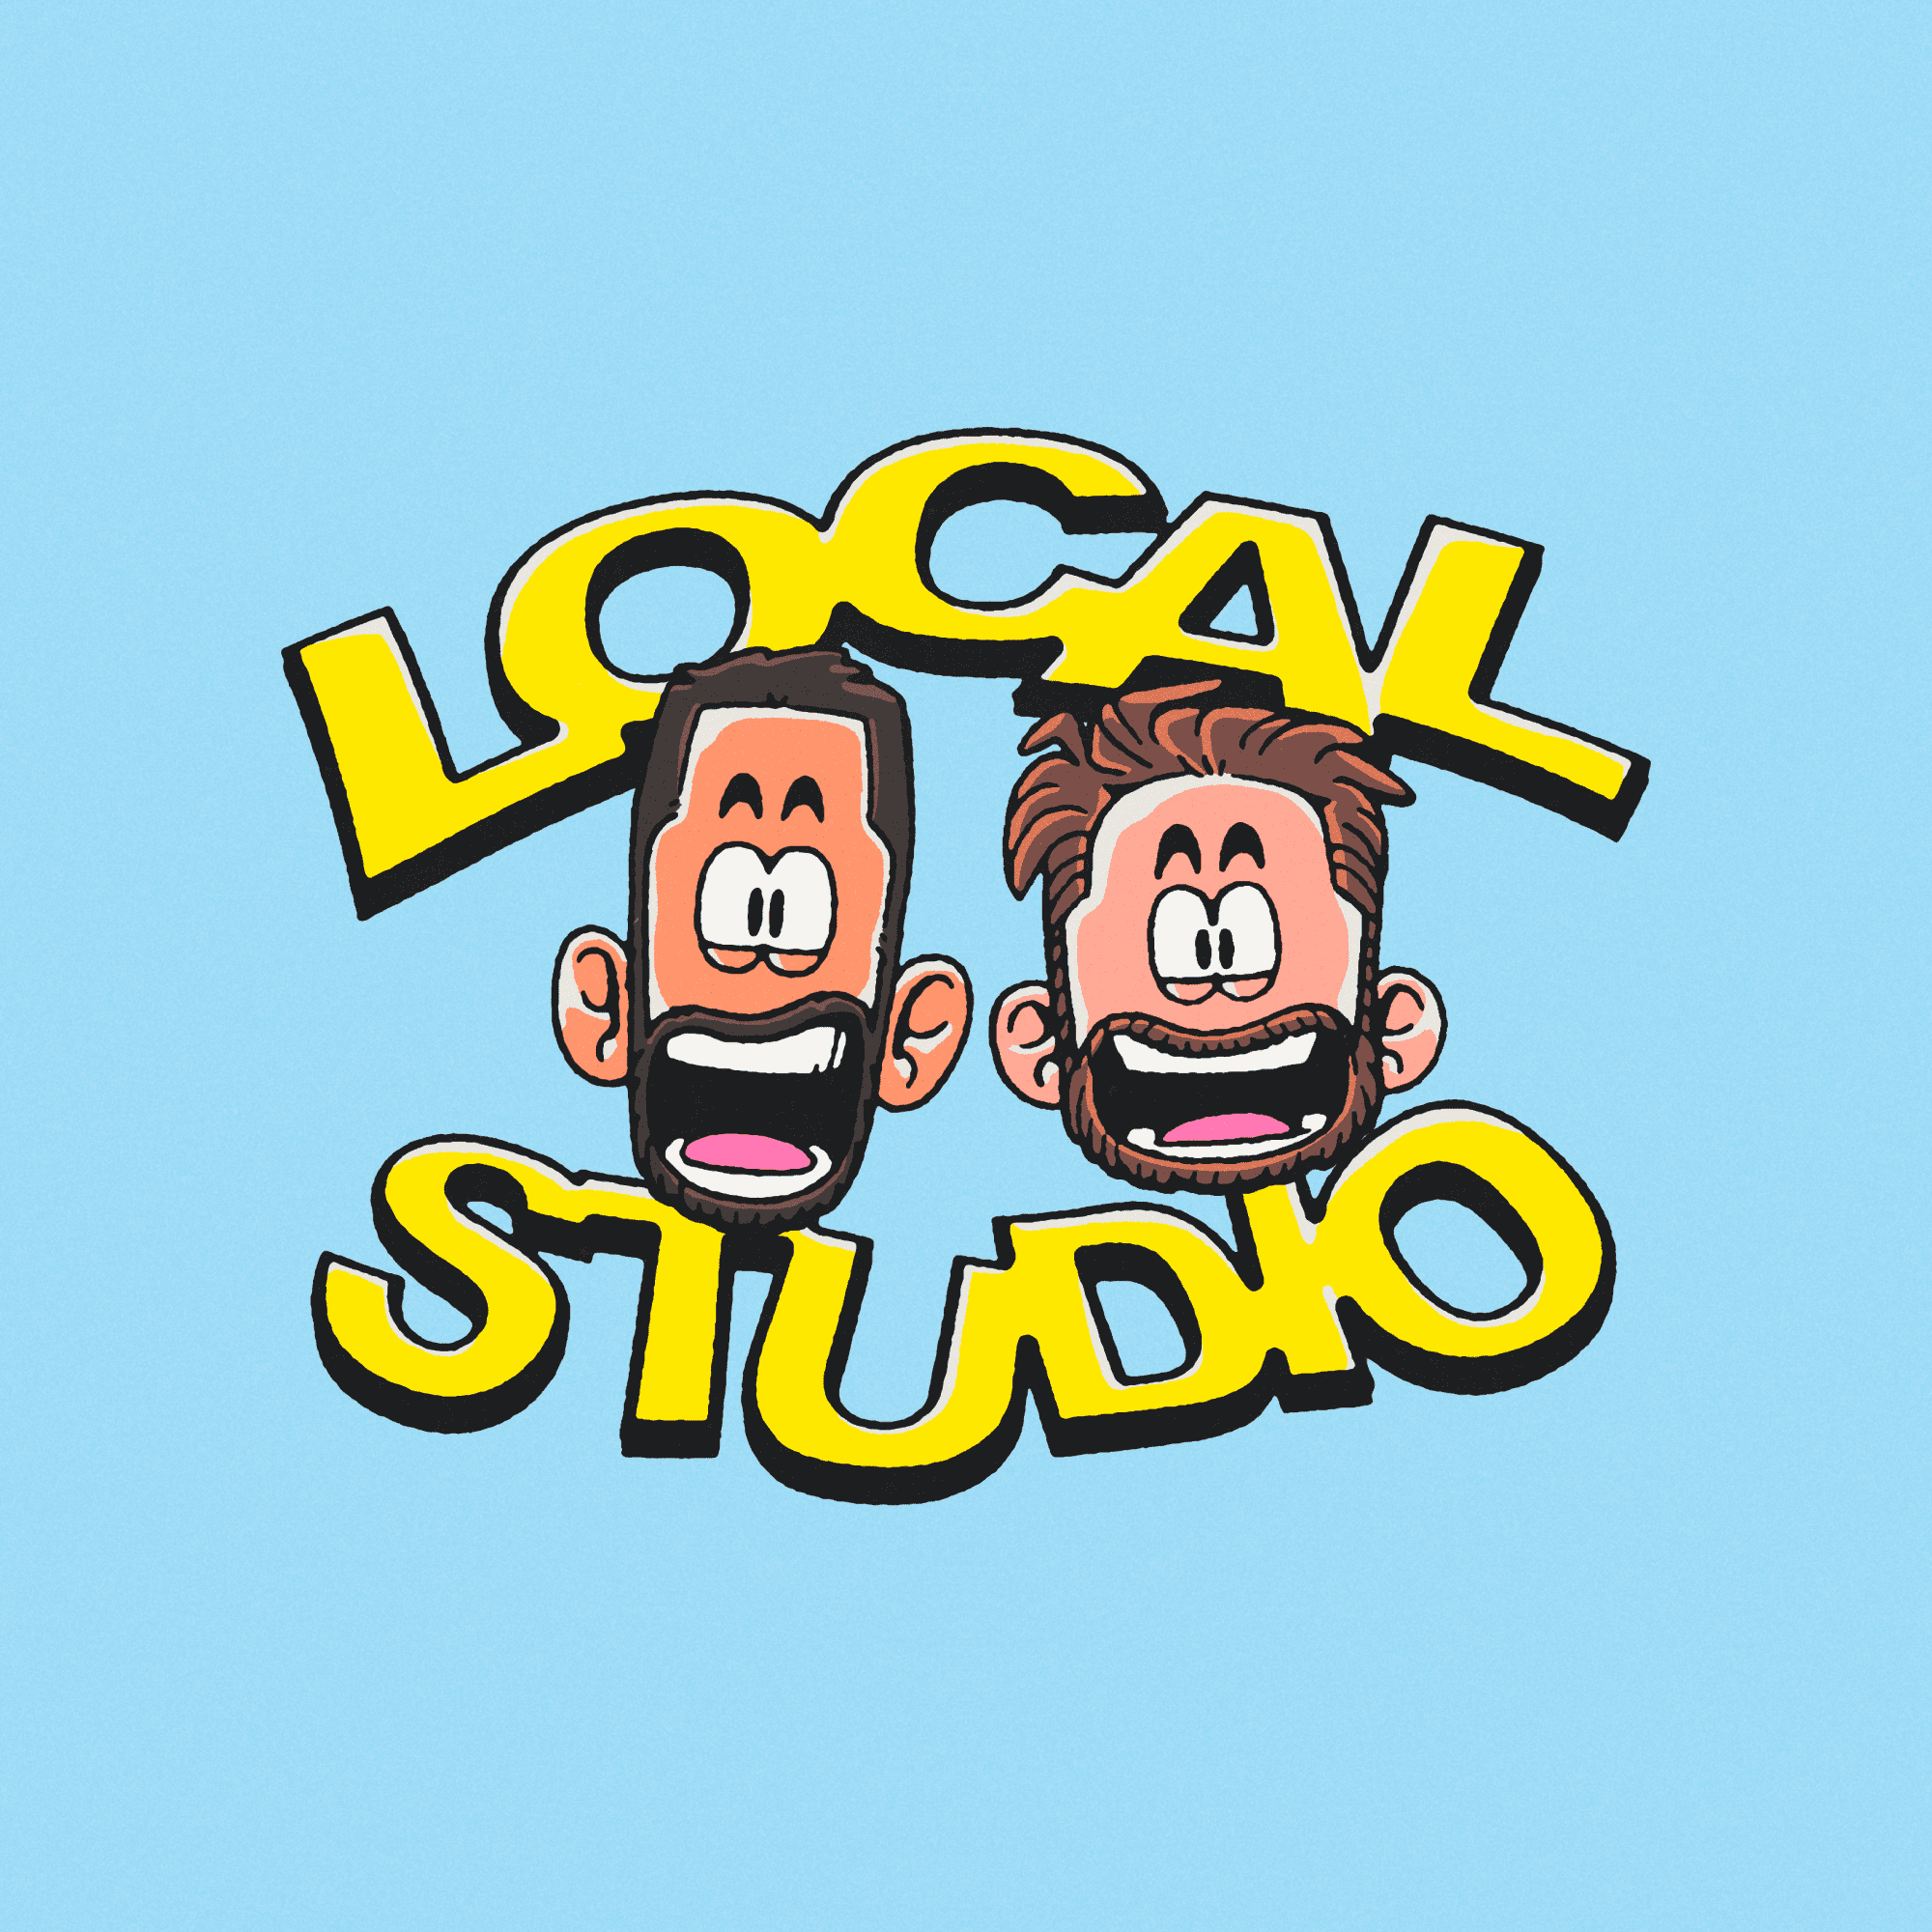 LOCAL Studio